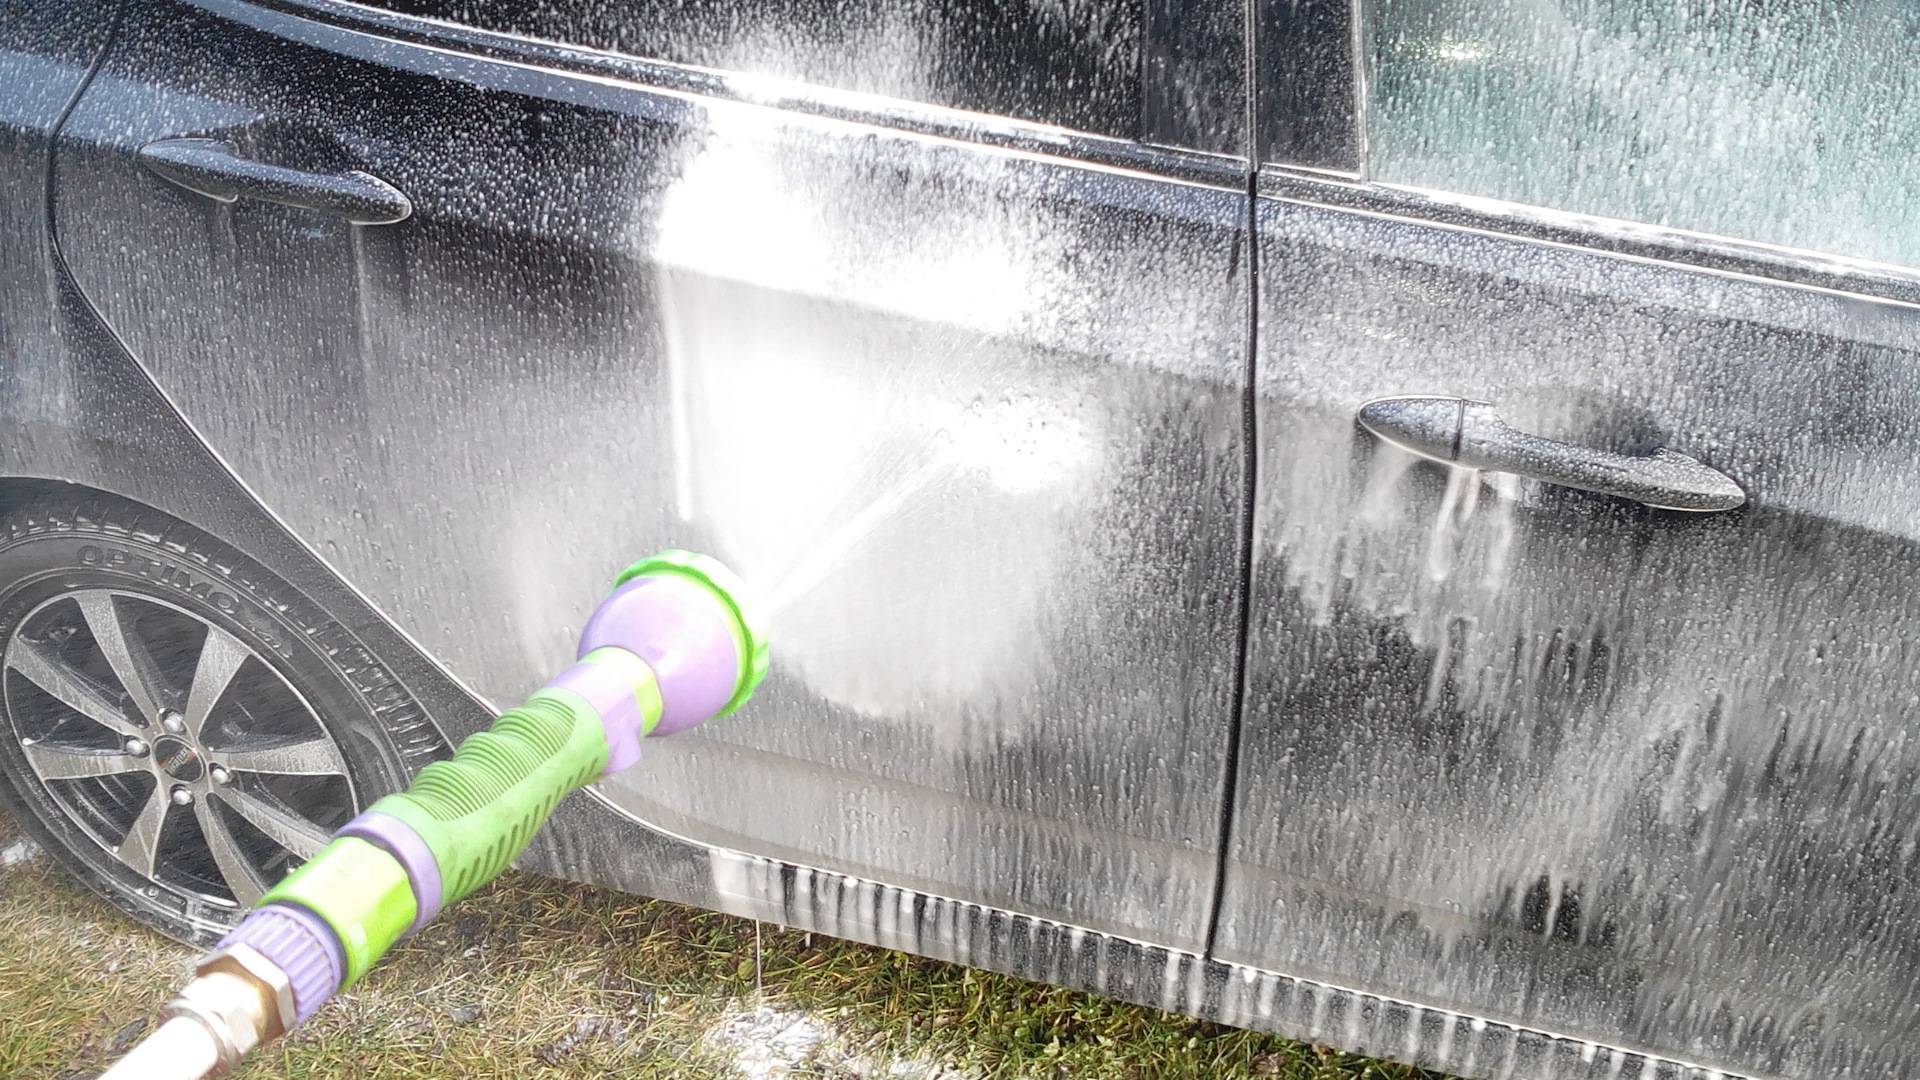 Как правильно мыть машину на мойке самообслуживания как сэкономить, полезные лайфхаки